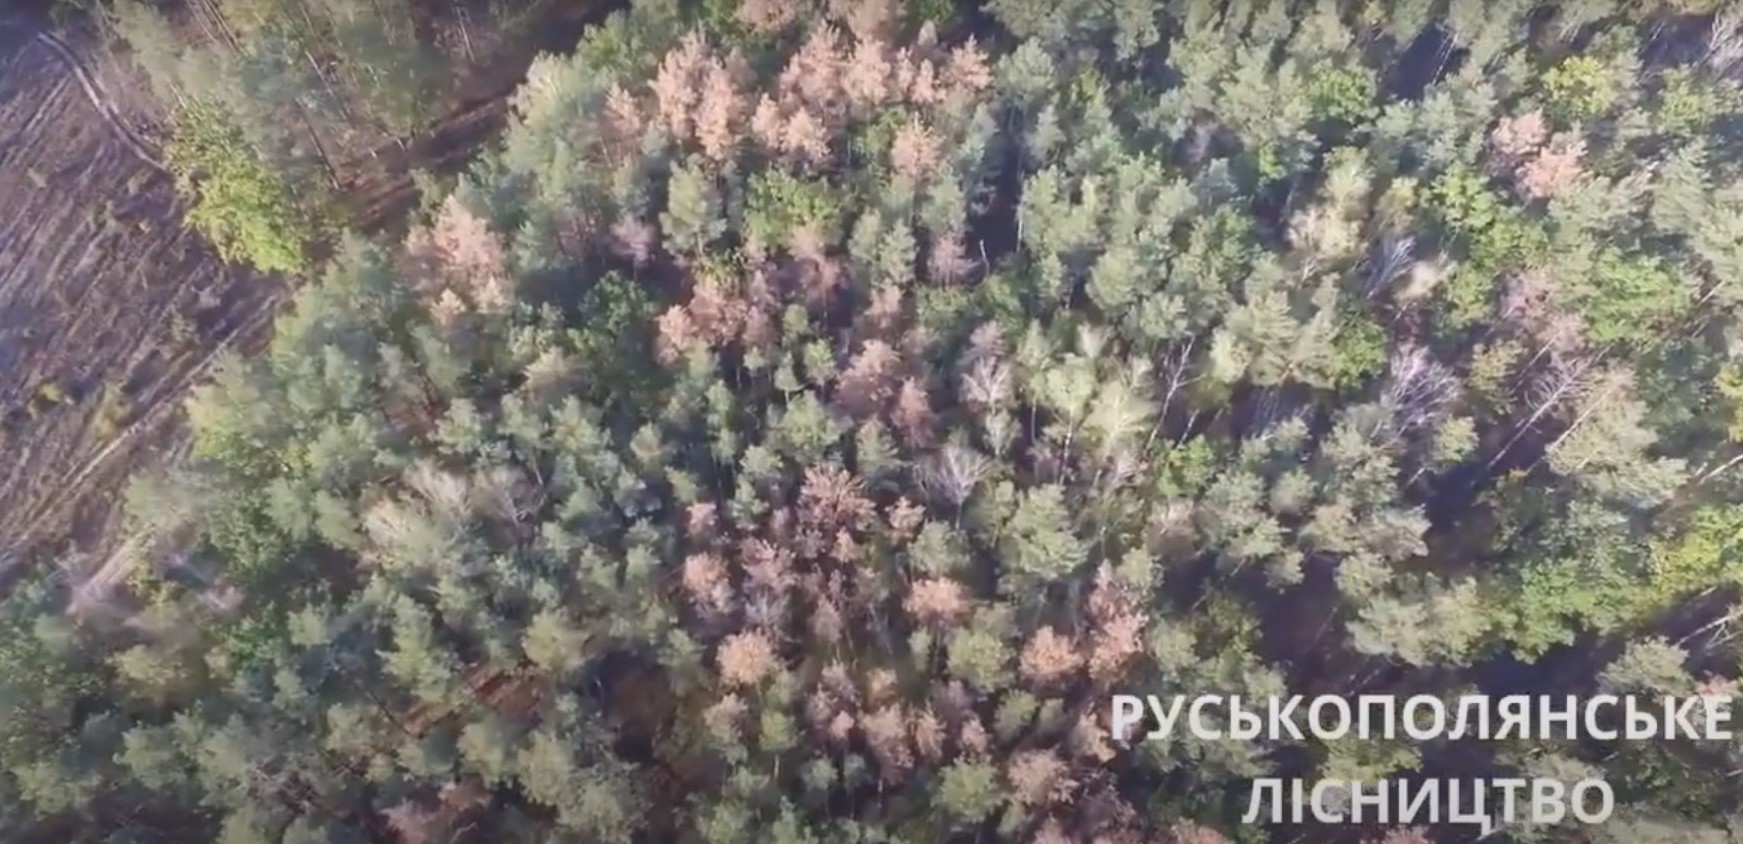 На Черкасчине в этом году высохло 25 тысяч гектаров леса (видео)